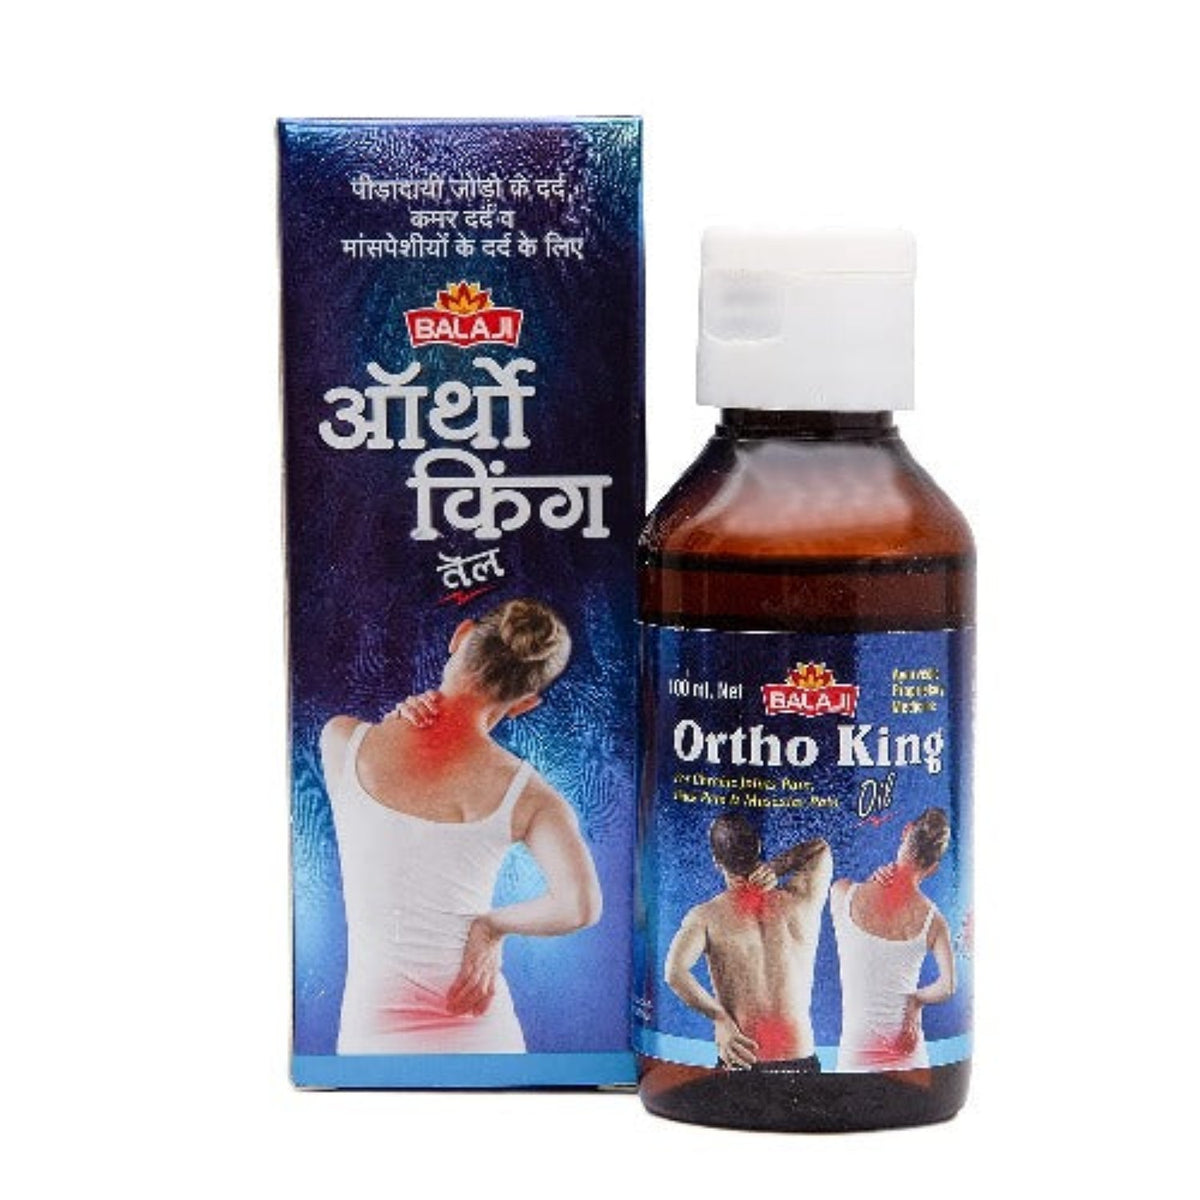 Balaji Sansthan Ayurvedic Ortho King Schmerzlinderungsöl, eine Mischung aus allen Kräuterölen für Knie, Gelenke, Muskeln und Rückenschmerzen, bietet lang anhaltendes und gesundes Gelenköl und eine Kapsel